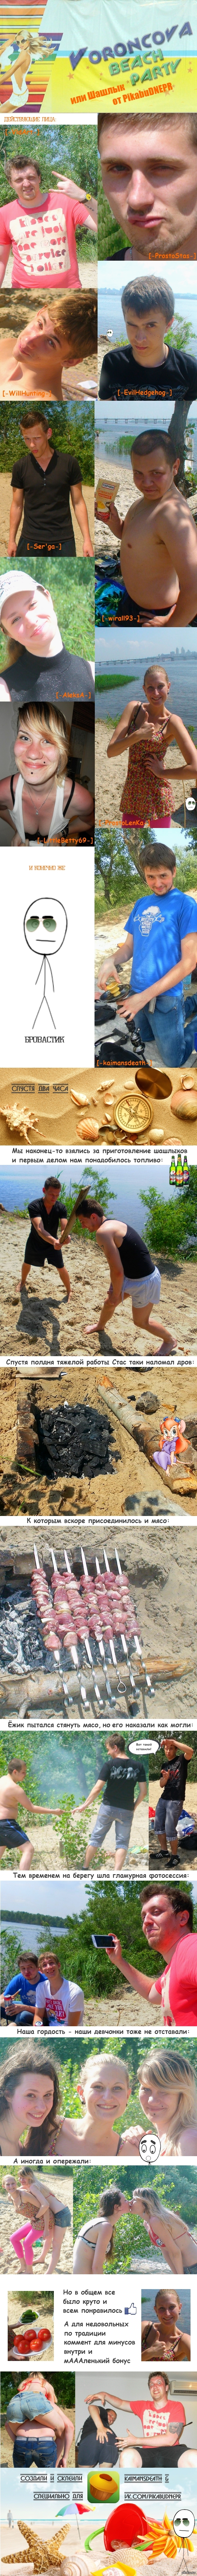  &quot;Voroncova Beach Party&quot;  PikabuDNEPR   http://pikabu.ru/story/_1243207  http://pikabu.ru/story/_1246207